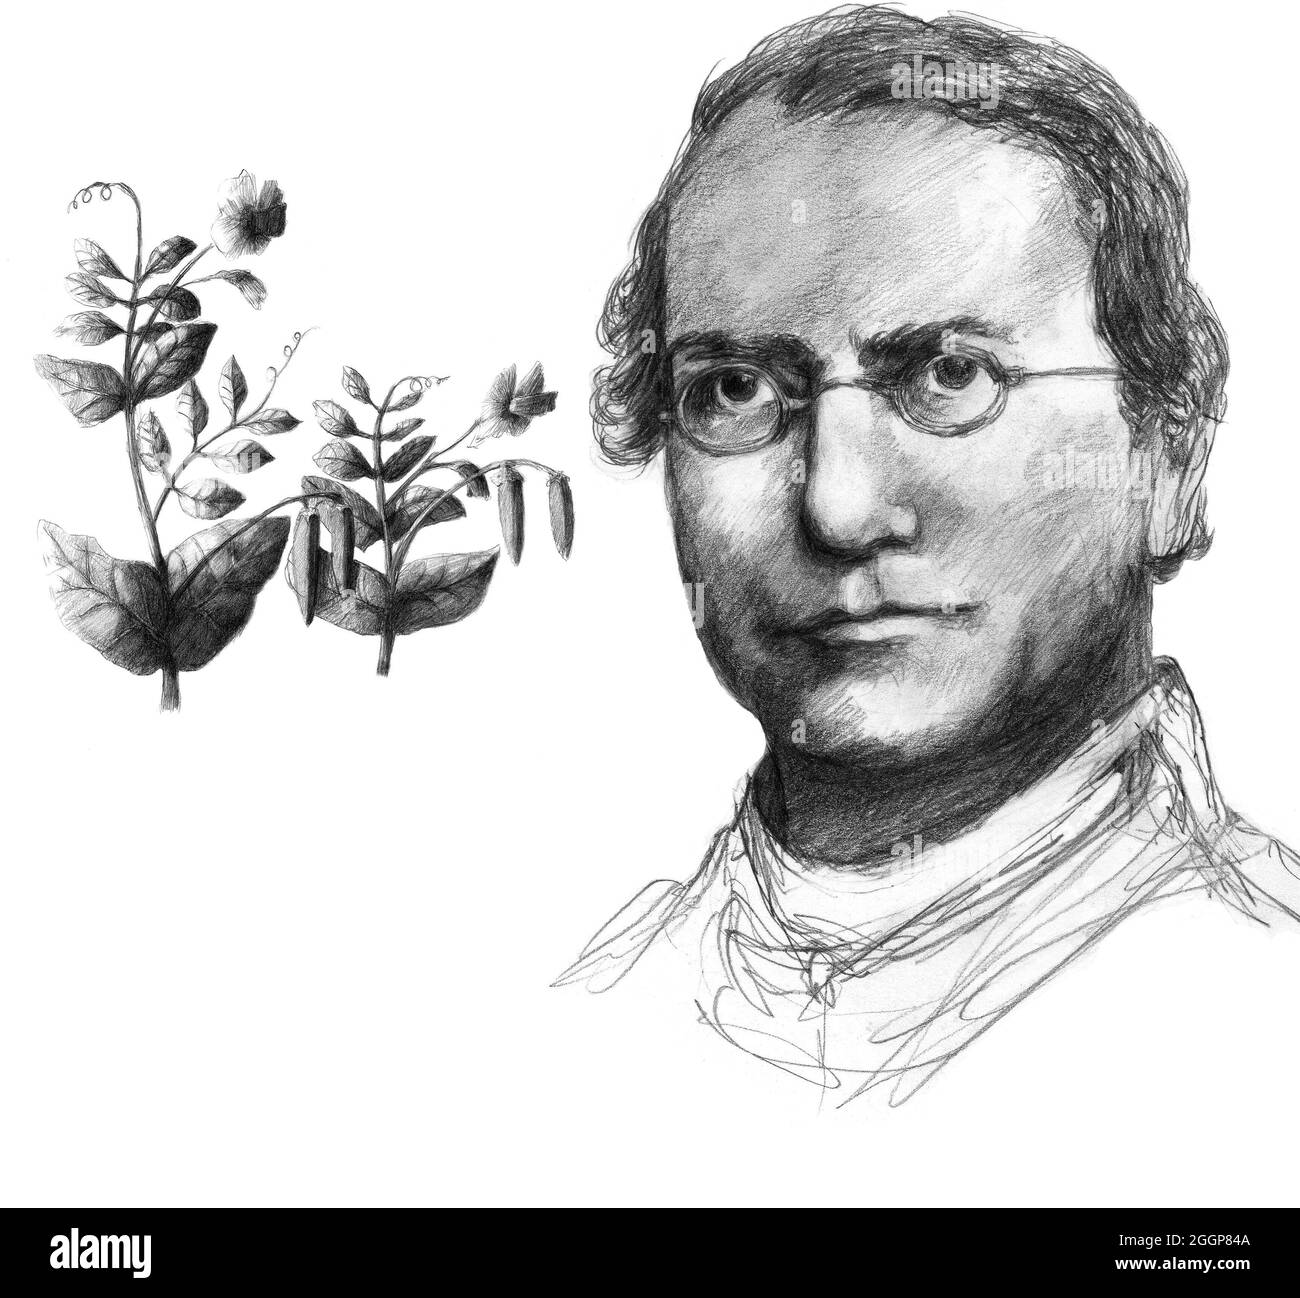 Illustration of Gregor Johann Mendel (1822-1884), Austrian botanist and founder of genetics. Stock Photo